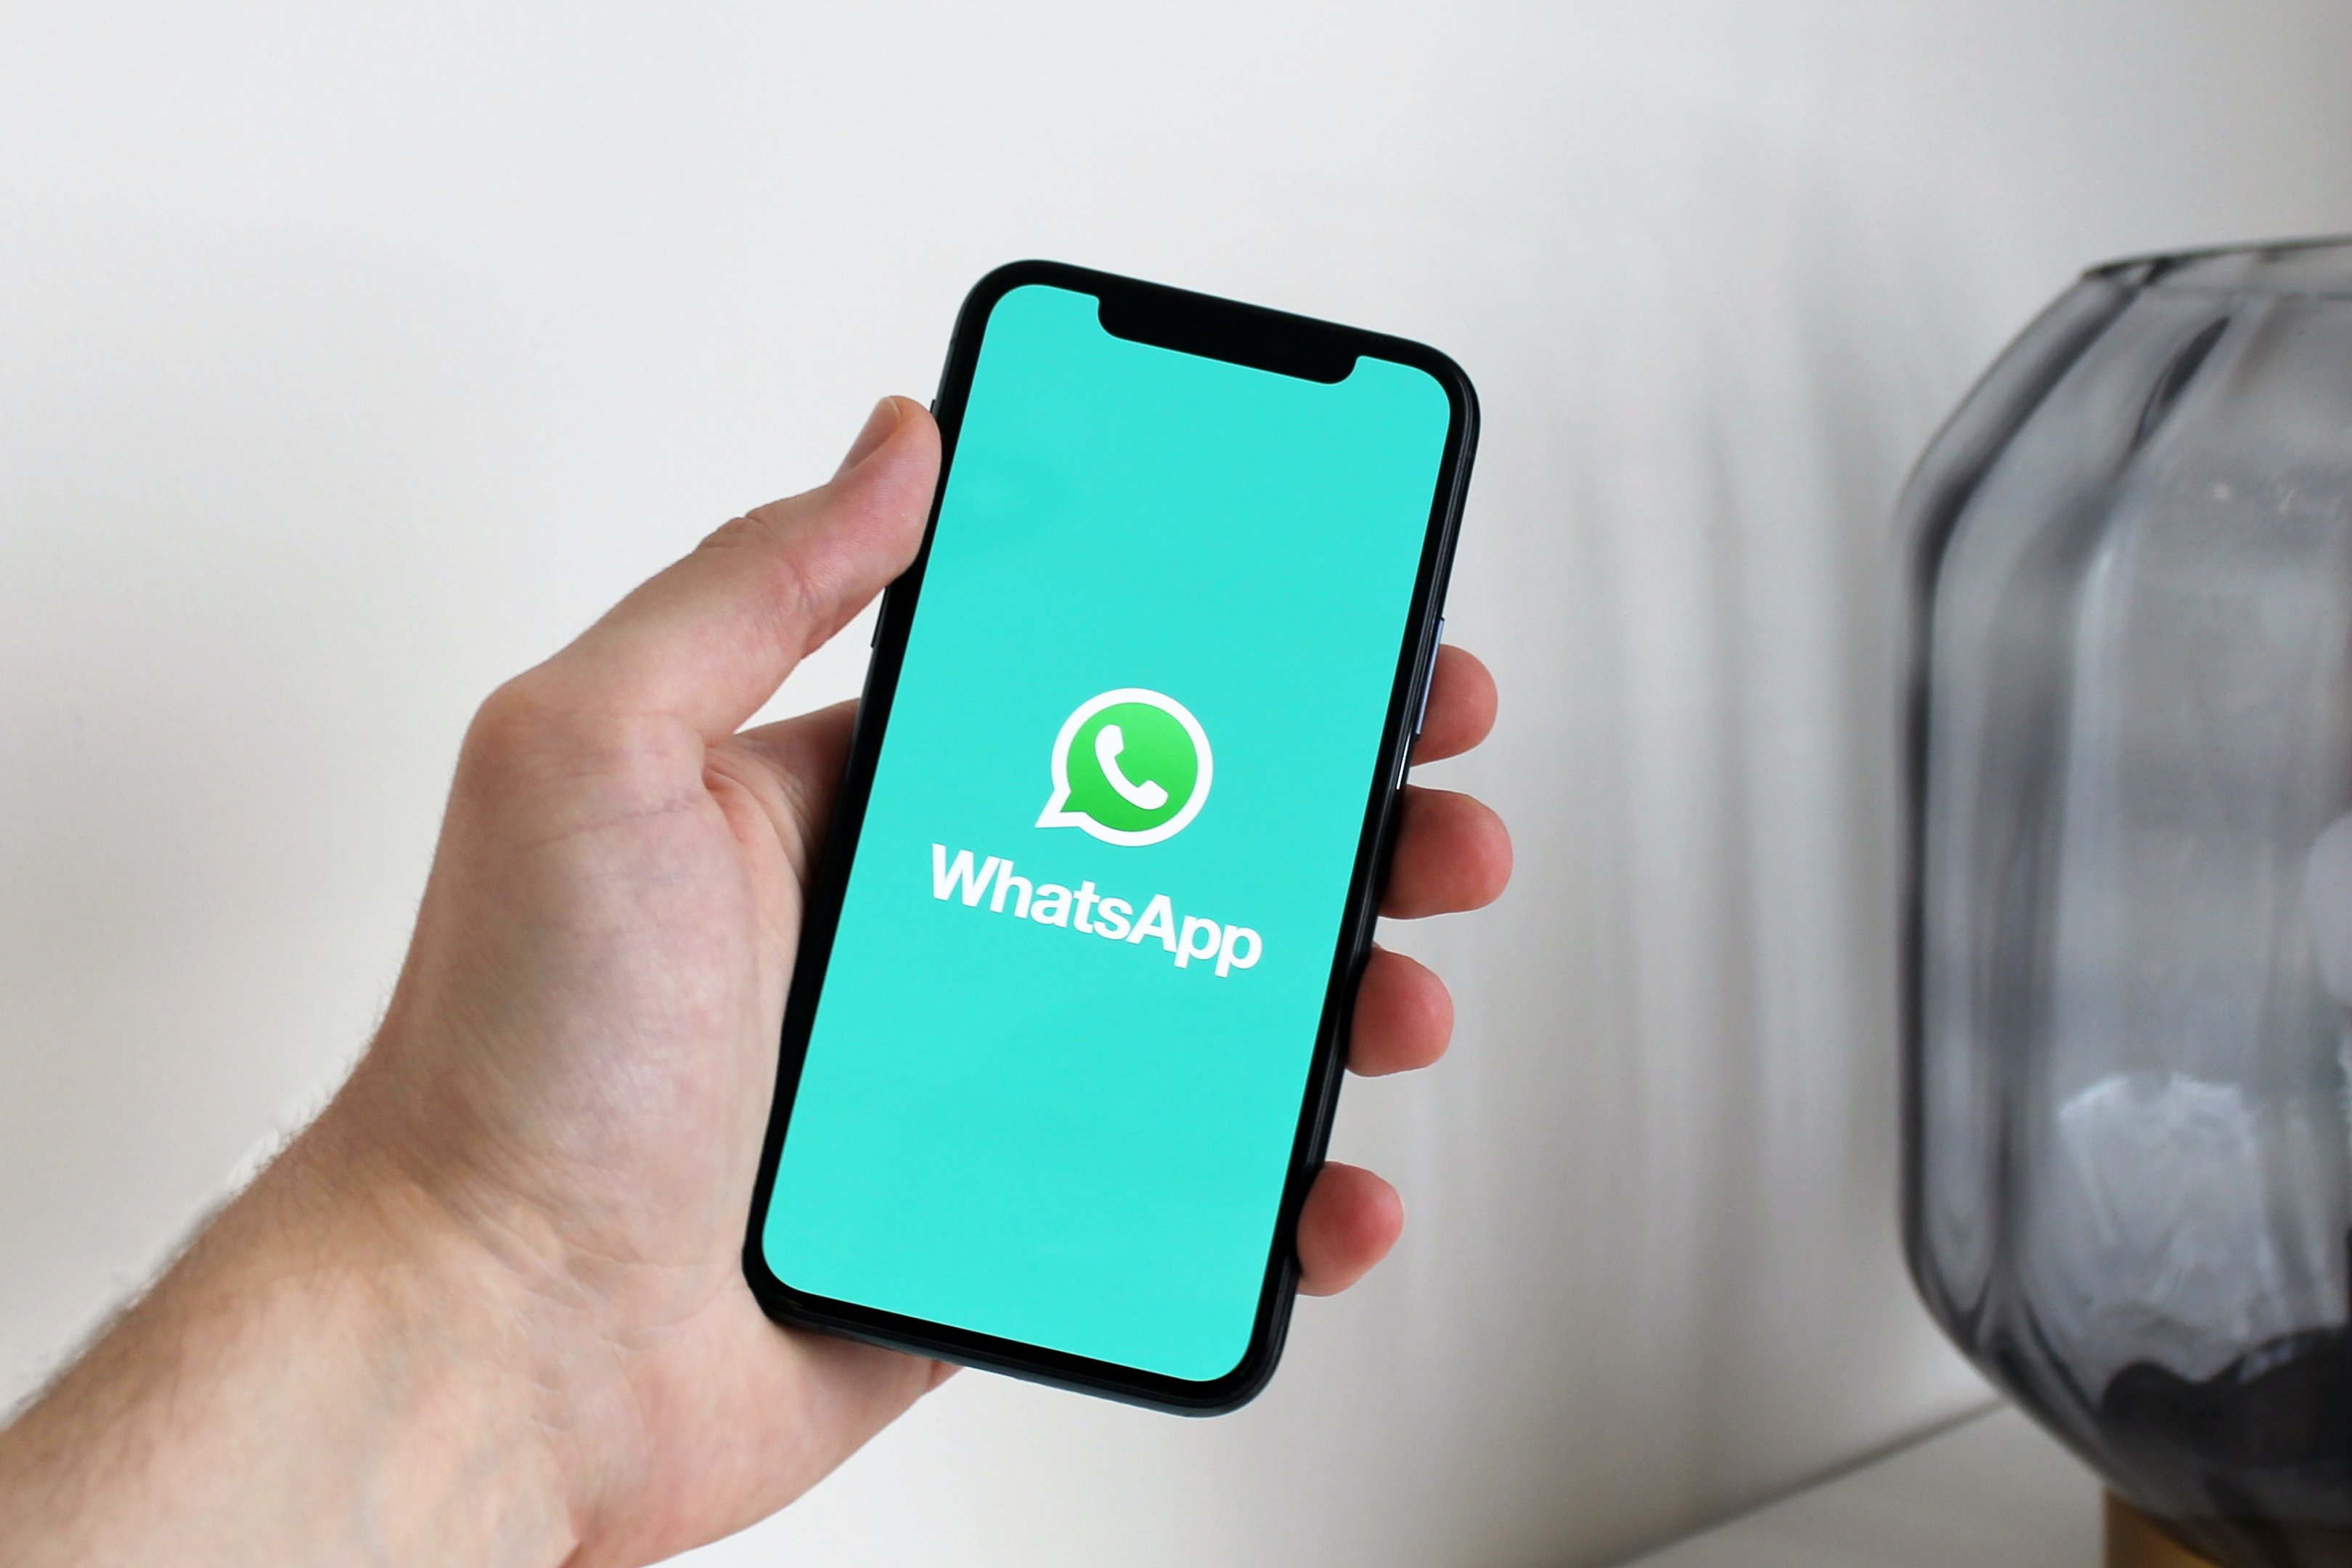  WhatsApp-ൽ ഓൺലൈനിൽ പ്രത്യക്ഷപ്പെടാതിരിക്കാനുള്ള 6 വഴികൾ